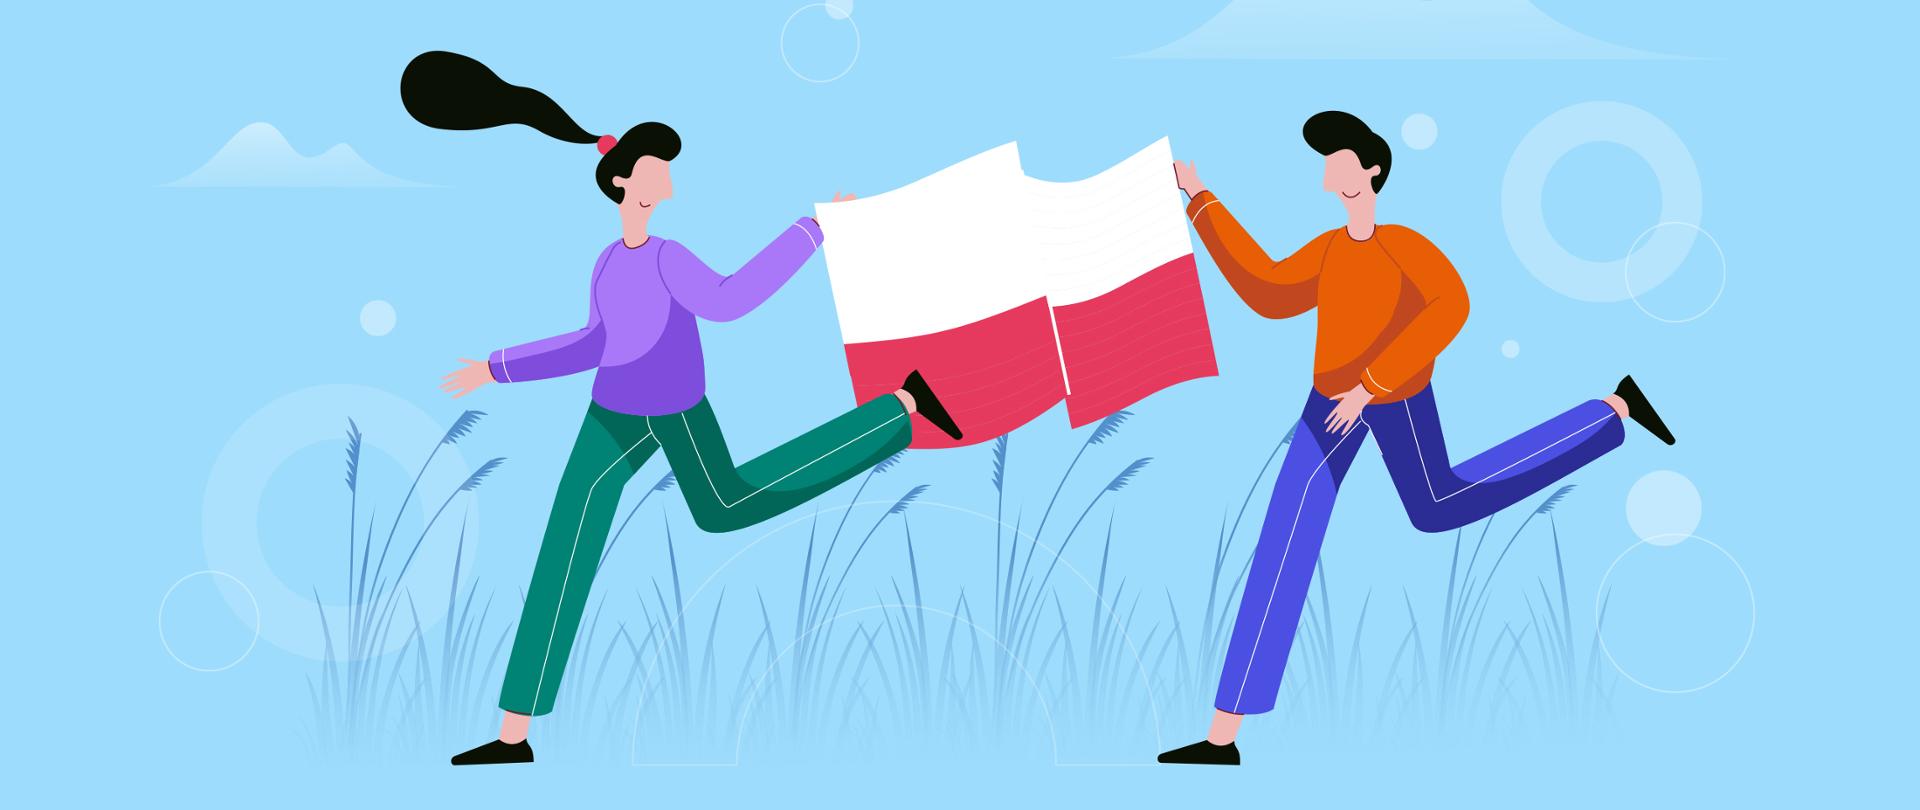 Grafika wektorowa - dwie osoby (kobieta i mężczyzna) biegną trzymając w dłoniach polską flagę.